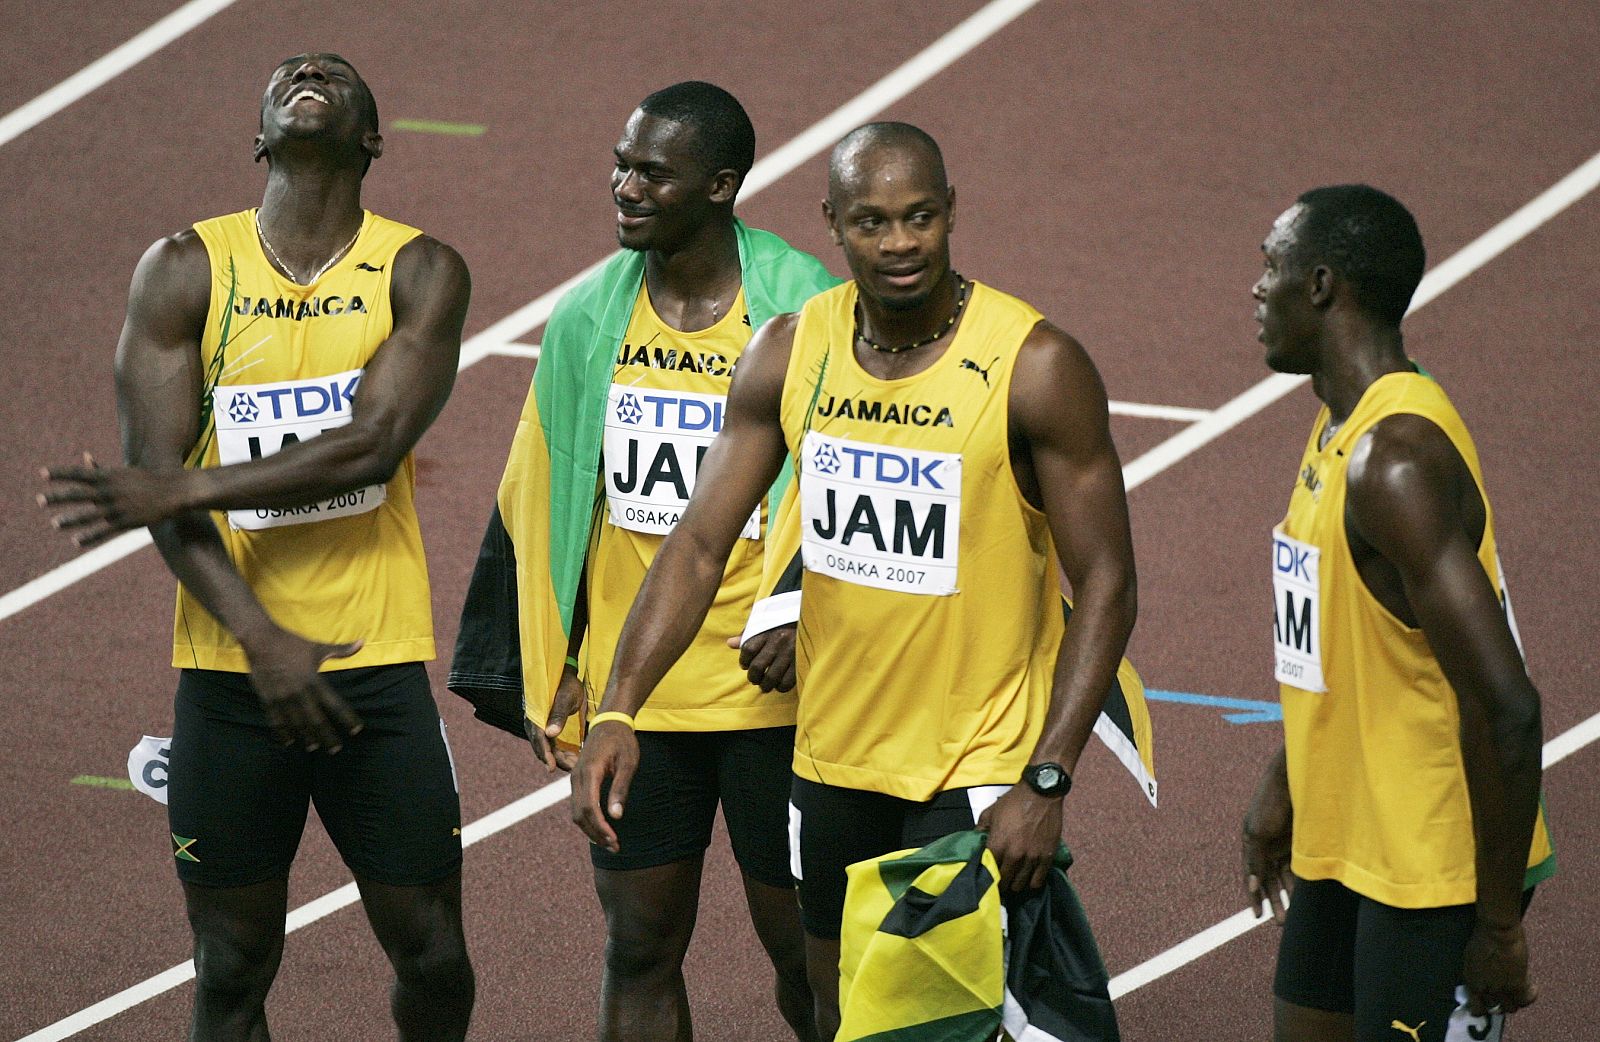 Los velocistas jamaicanos Marlon Devonish, Nesta Carter, Asafa Powell y Usain Bolt, tras una competición de 4x100.